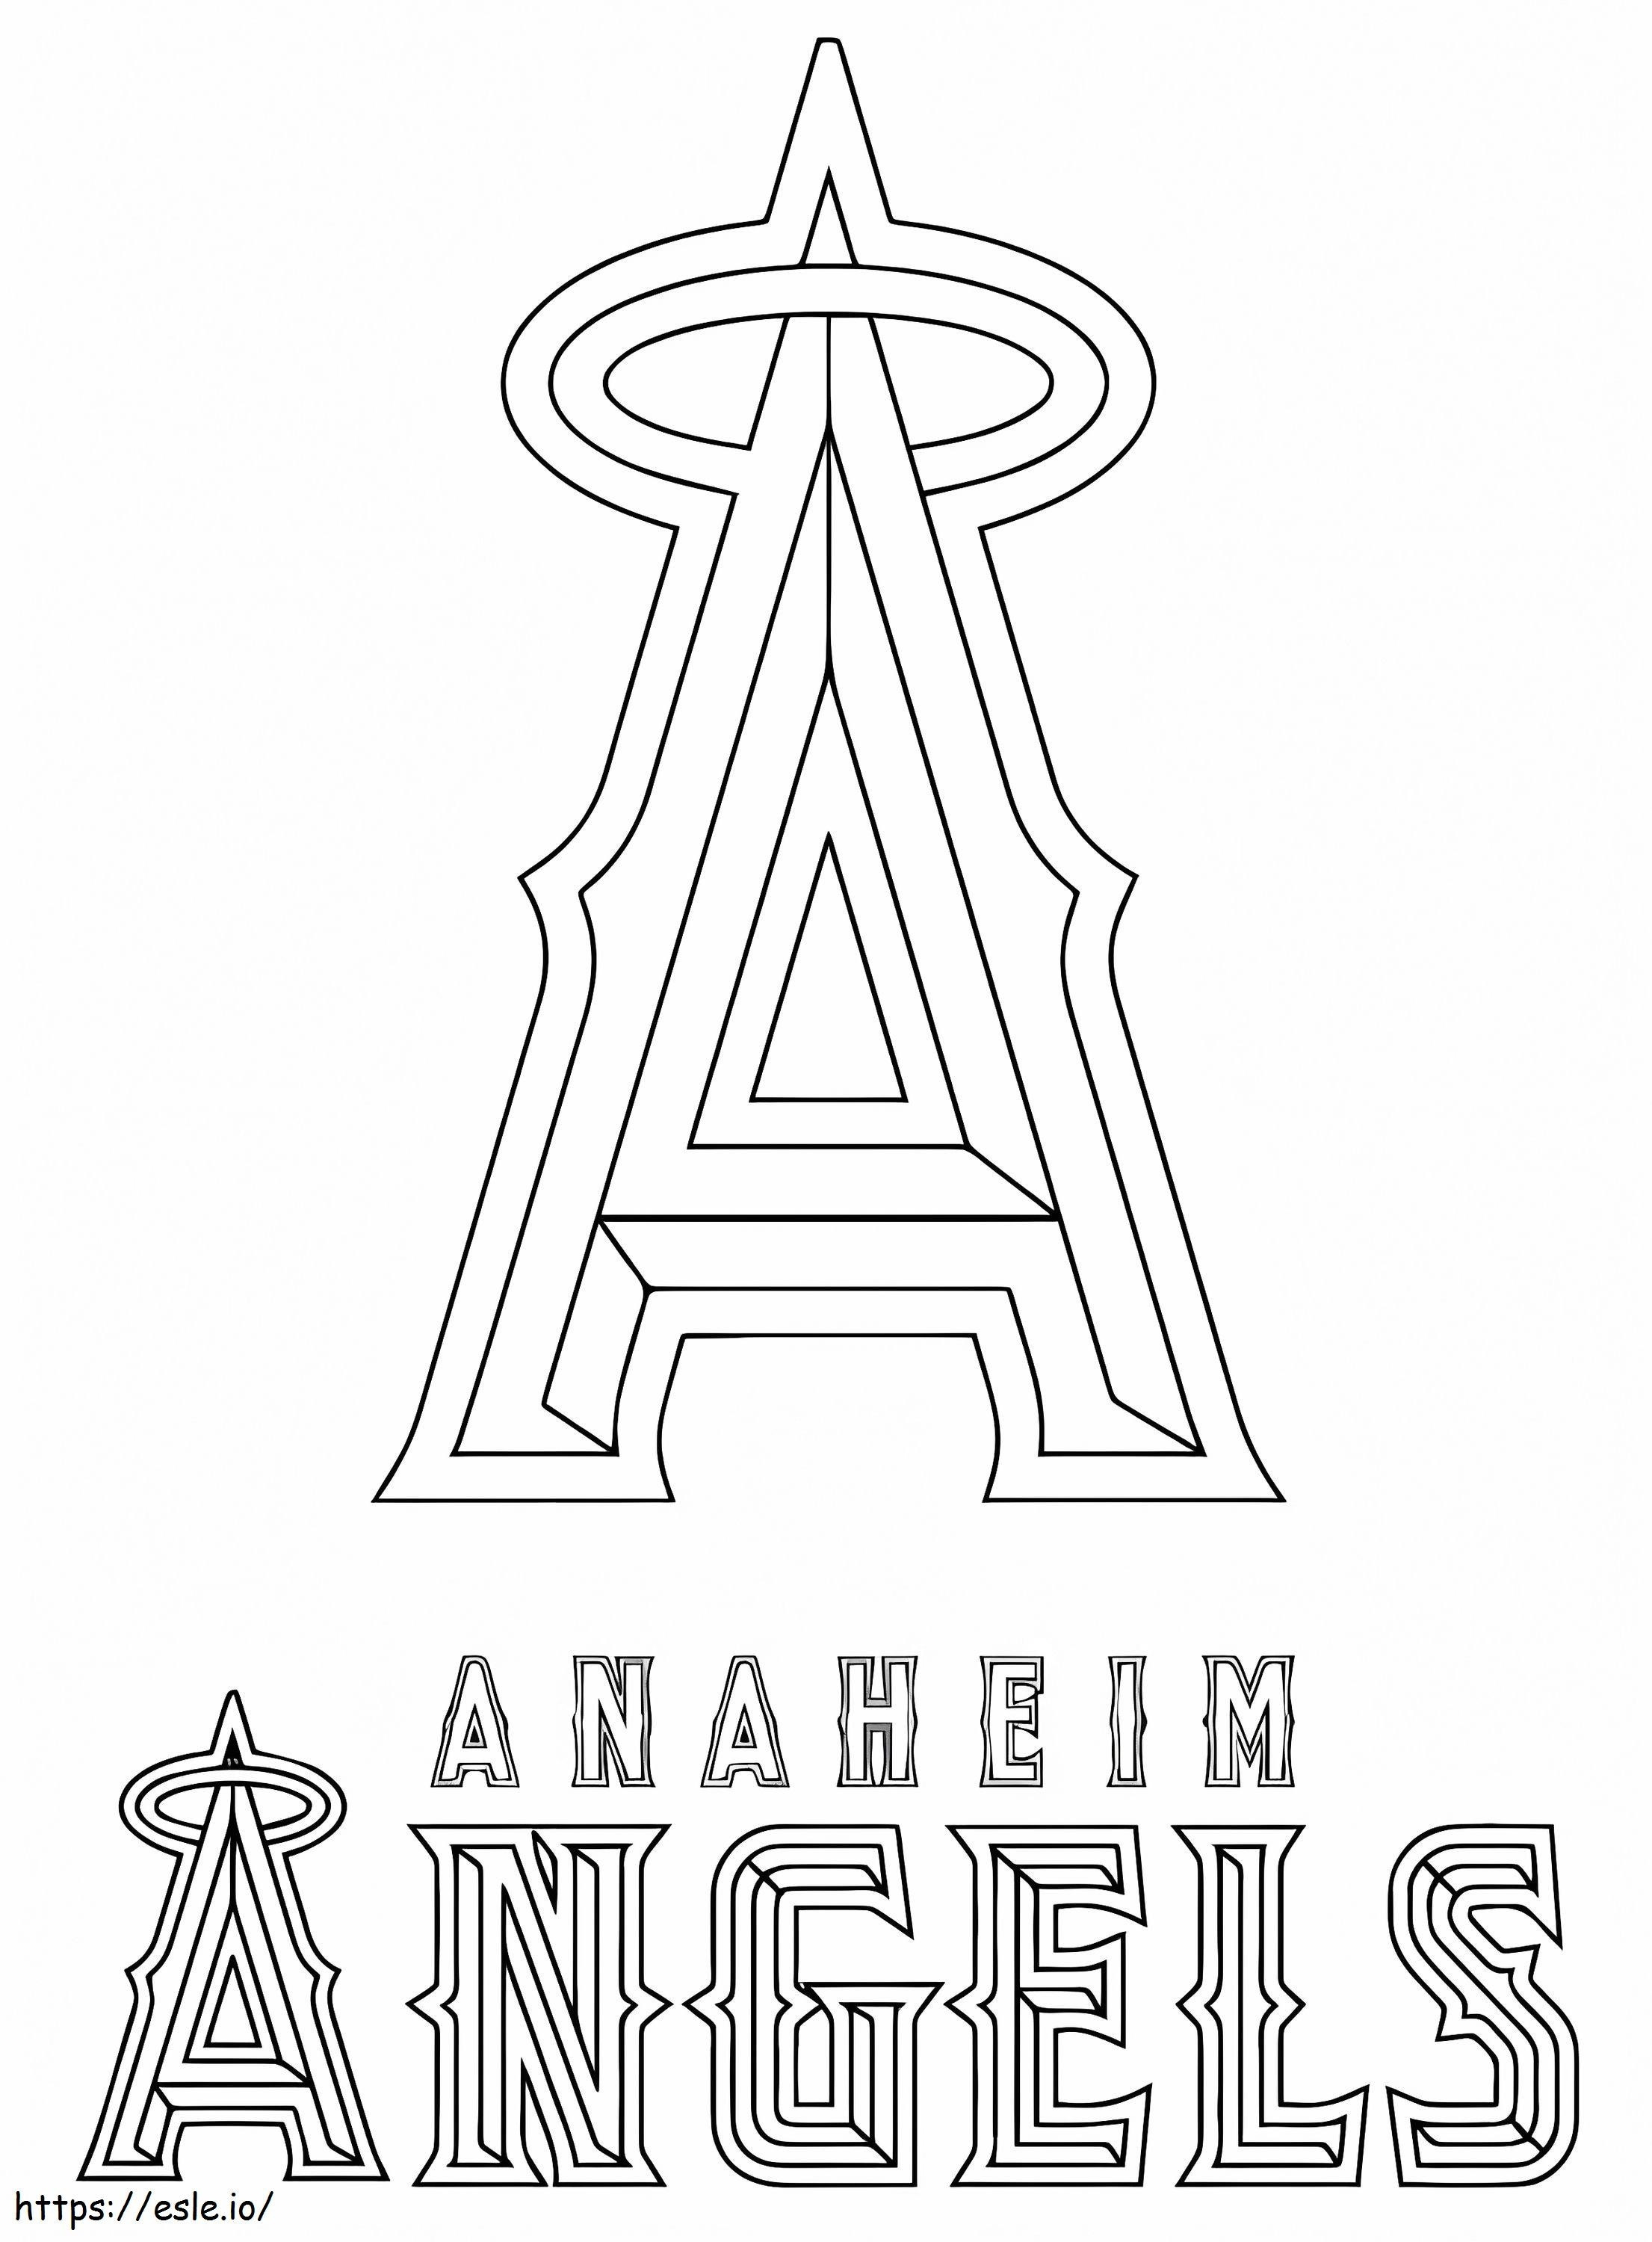 Logo degli angeli di Anaheim dei Los Angeles da colorare